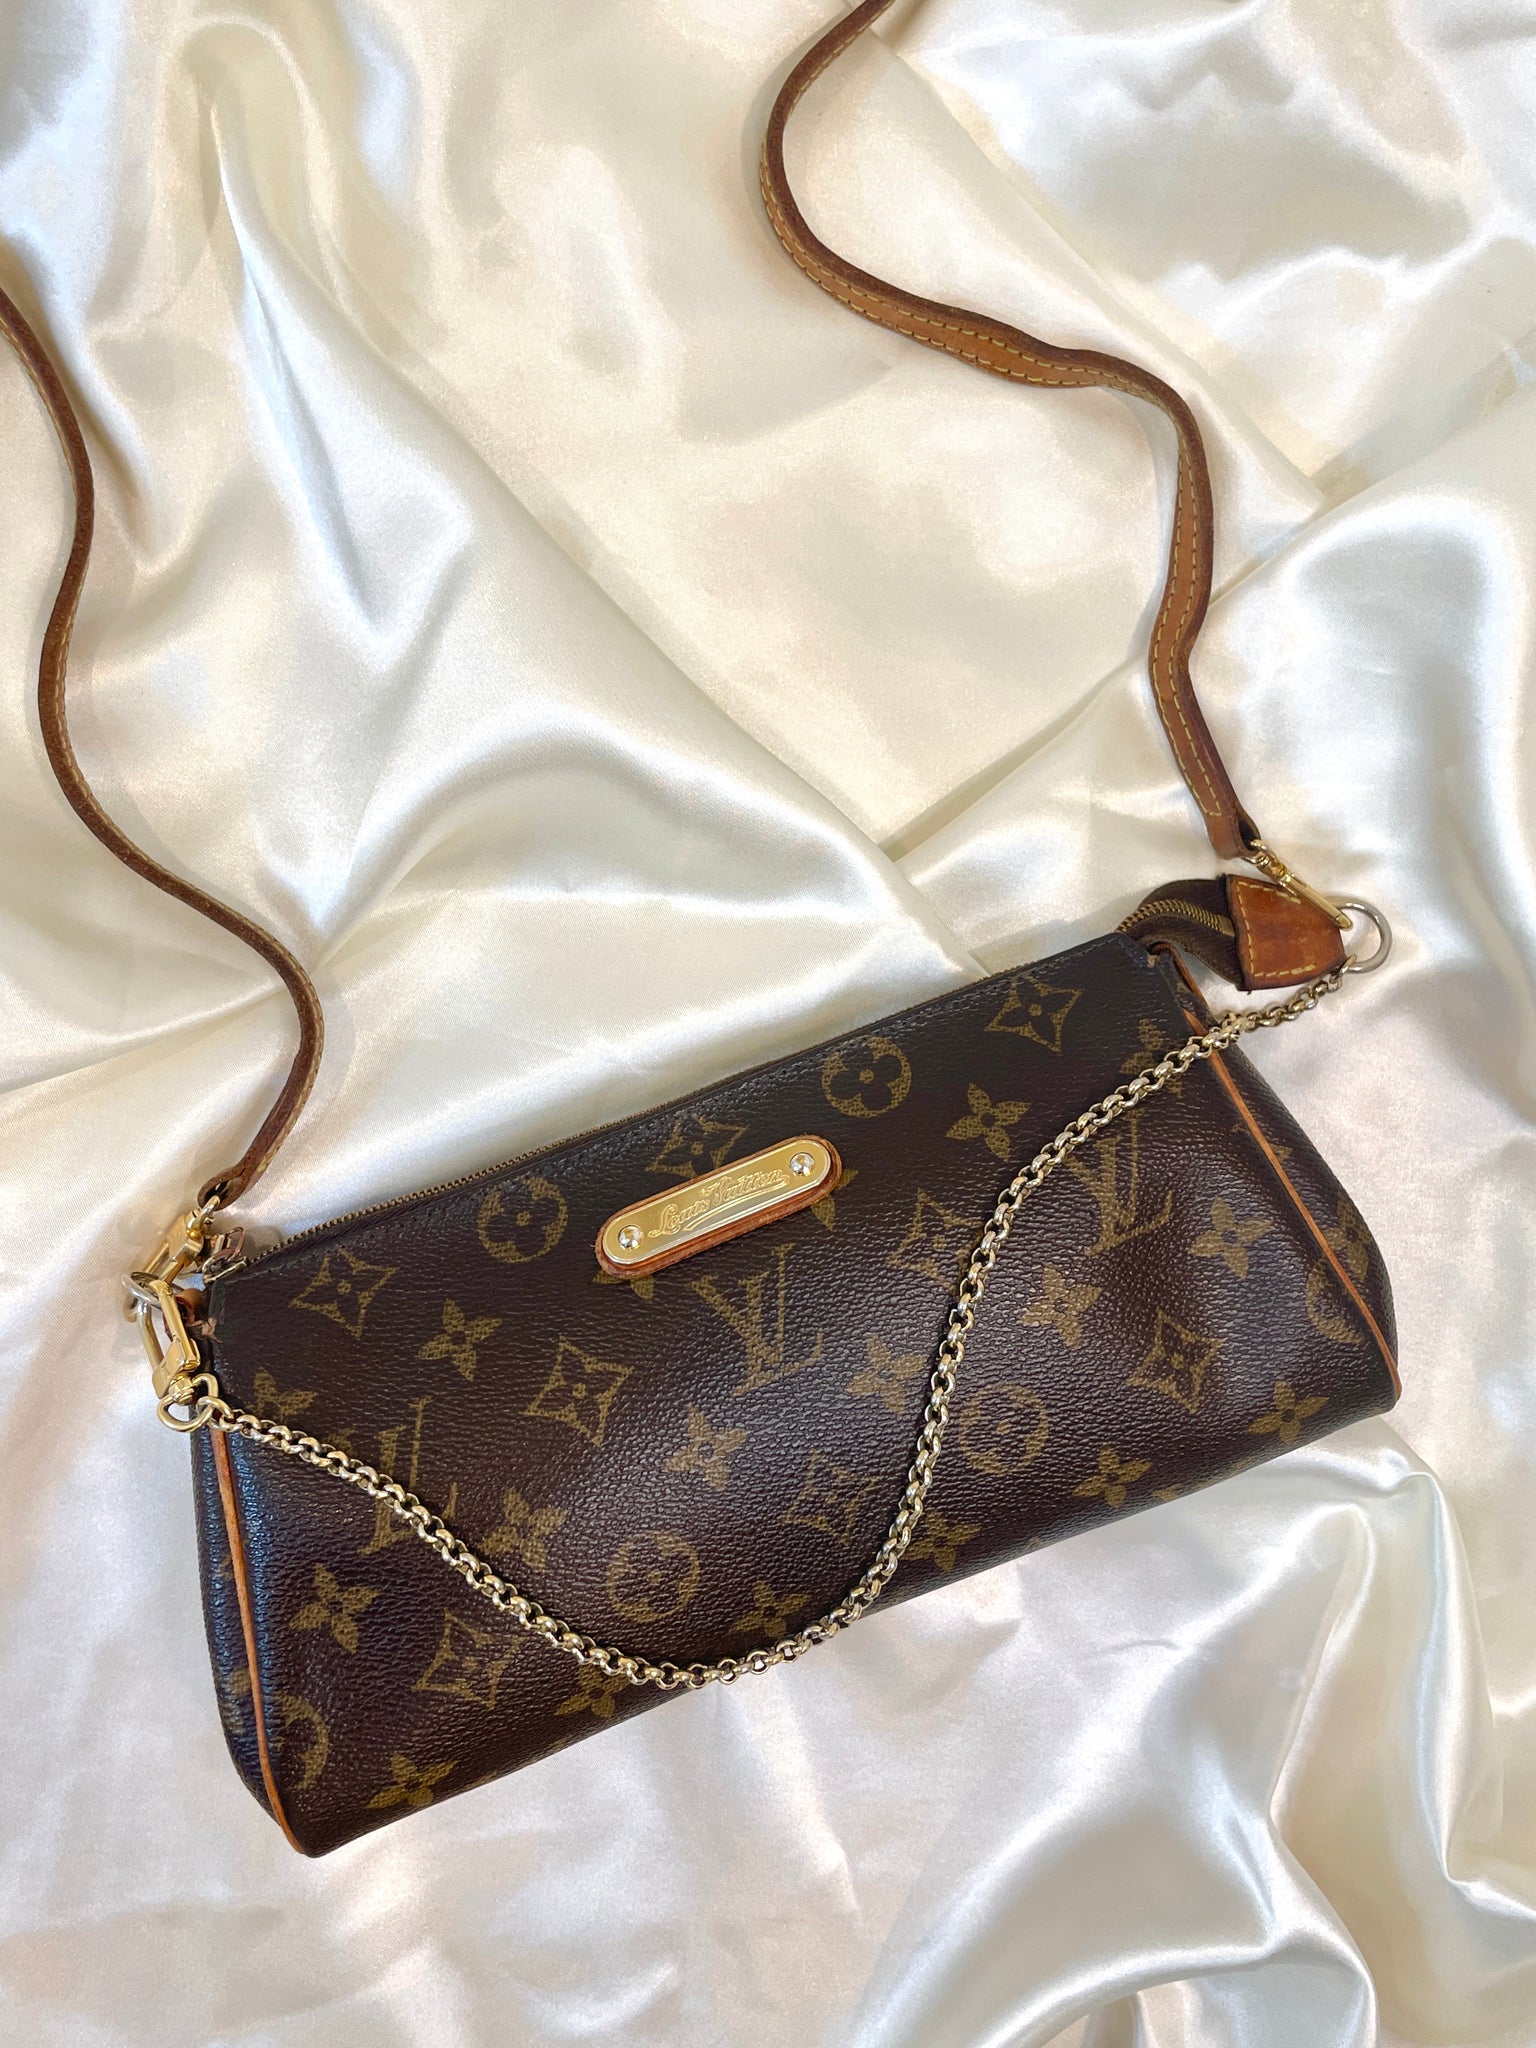 Louis Vuitton Eva Bag